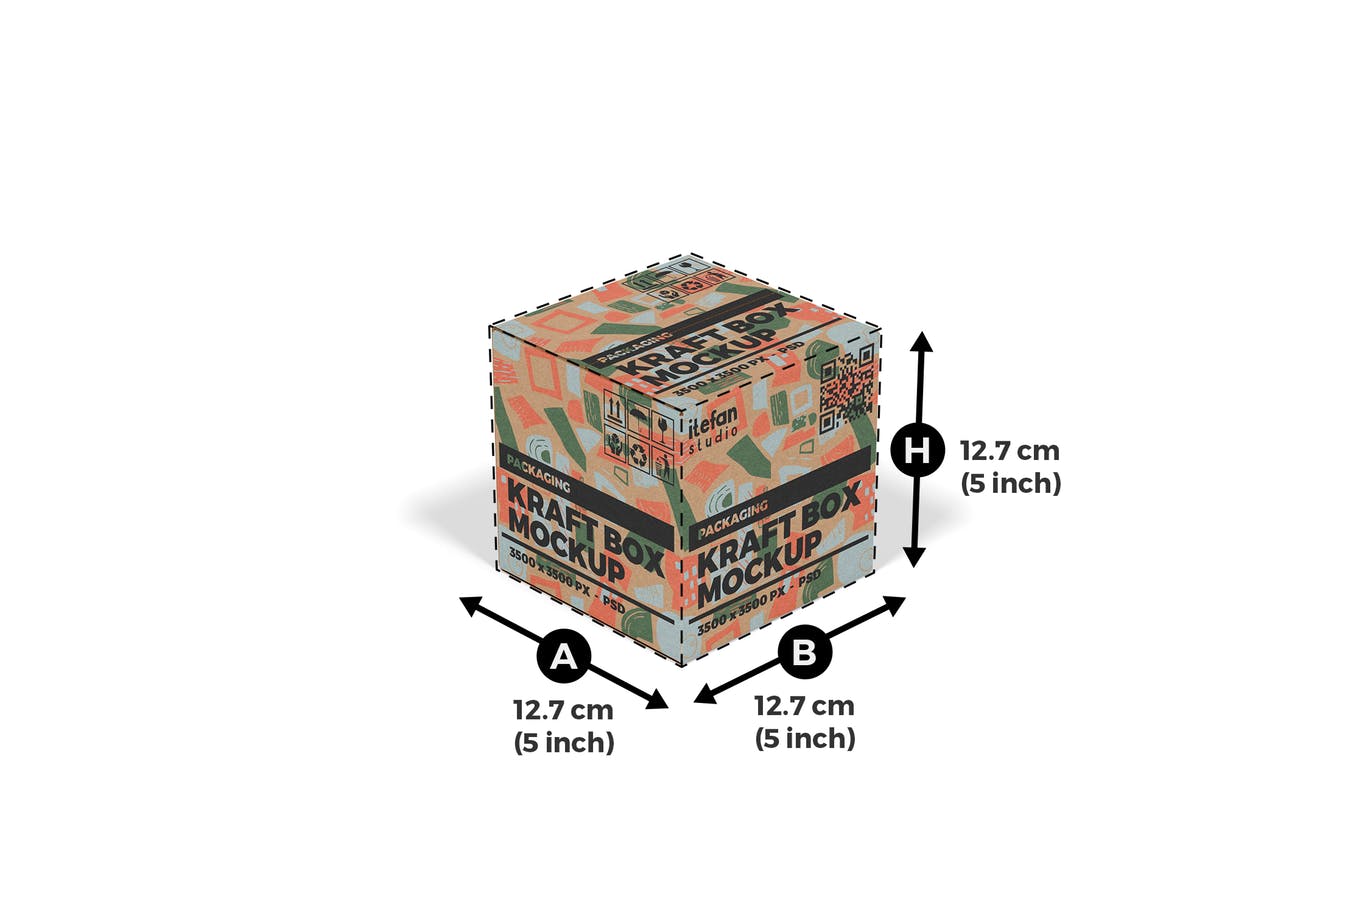 牛皮纸包装盒第一素材精选模板v3 Kraft Box Mockup – Packaging Vol 3插图(1)